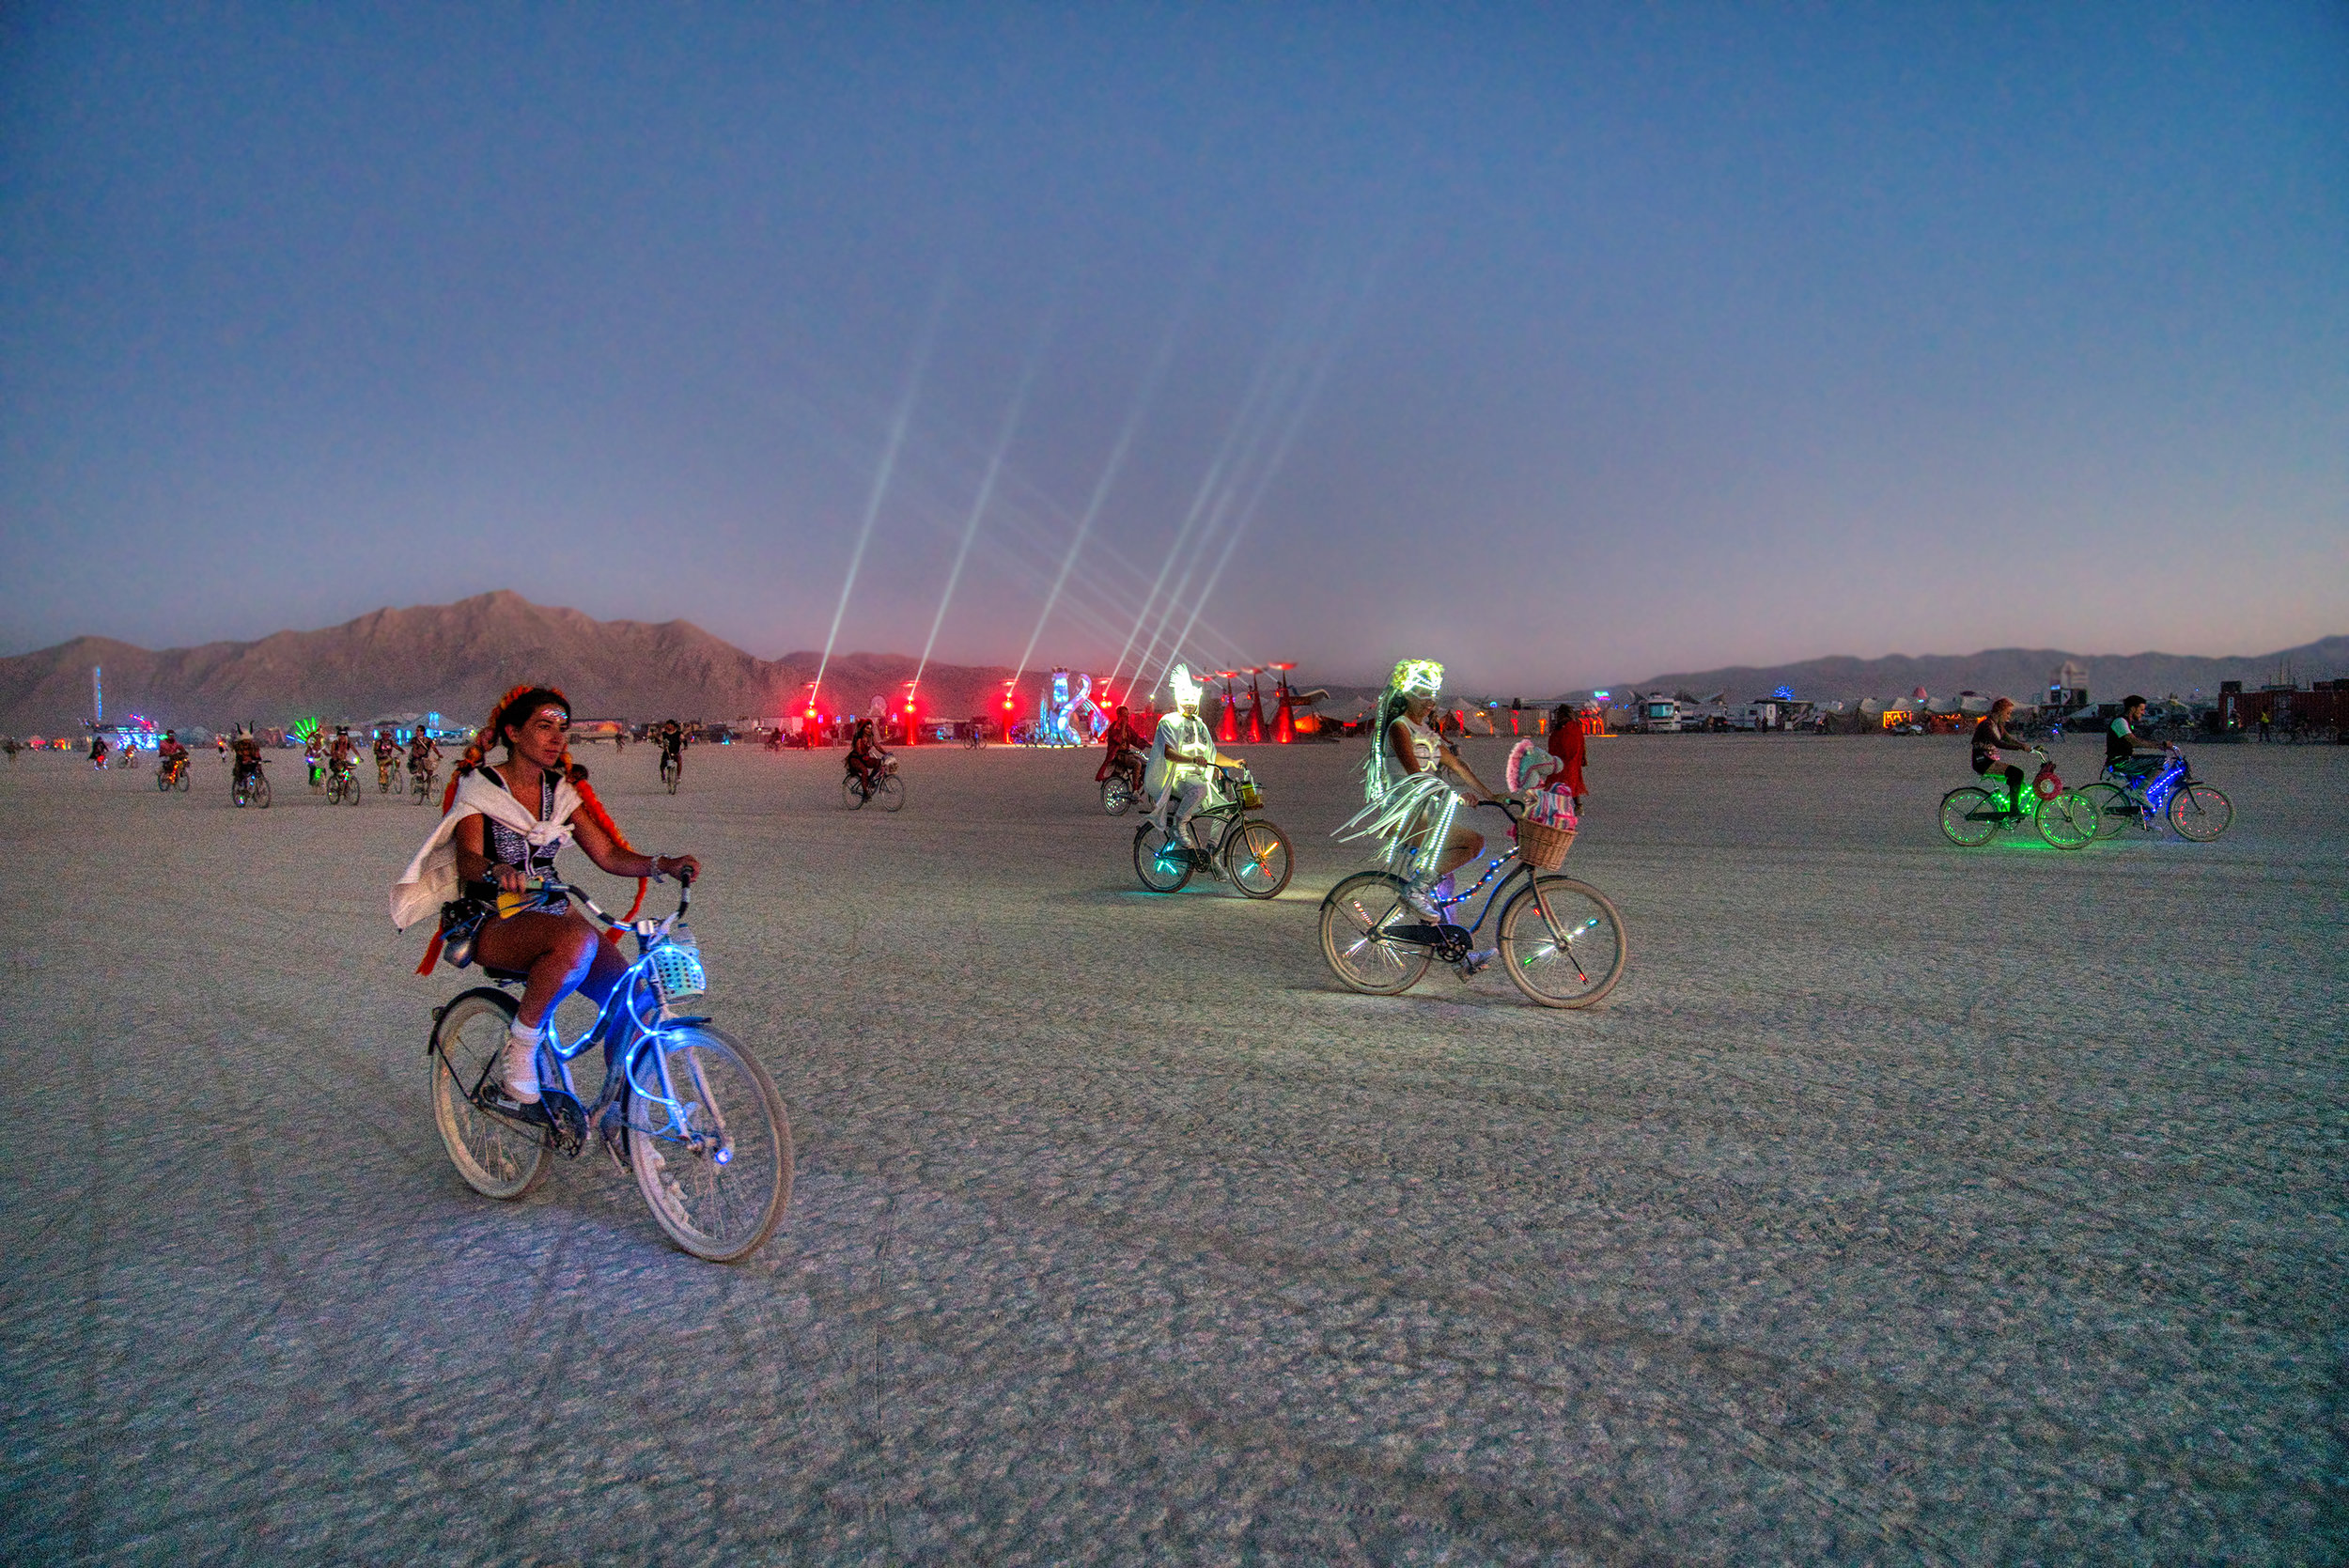 Burning Man 2019 - Riders of the Burn